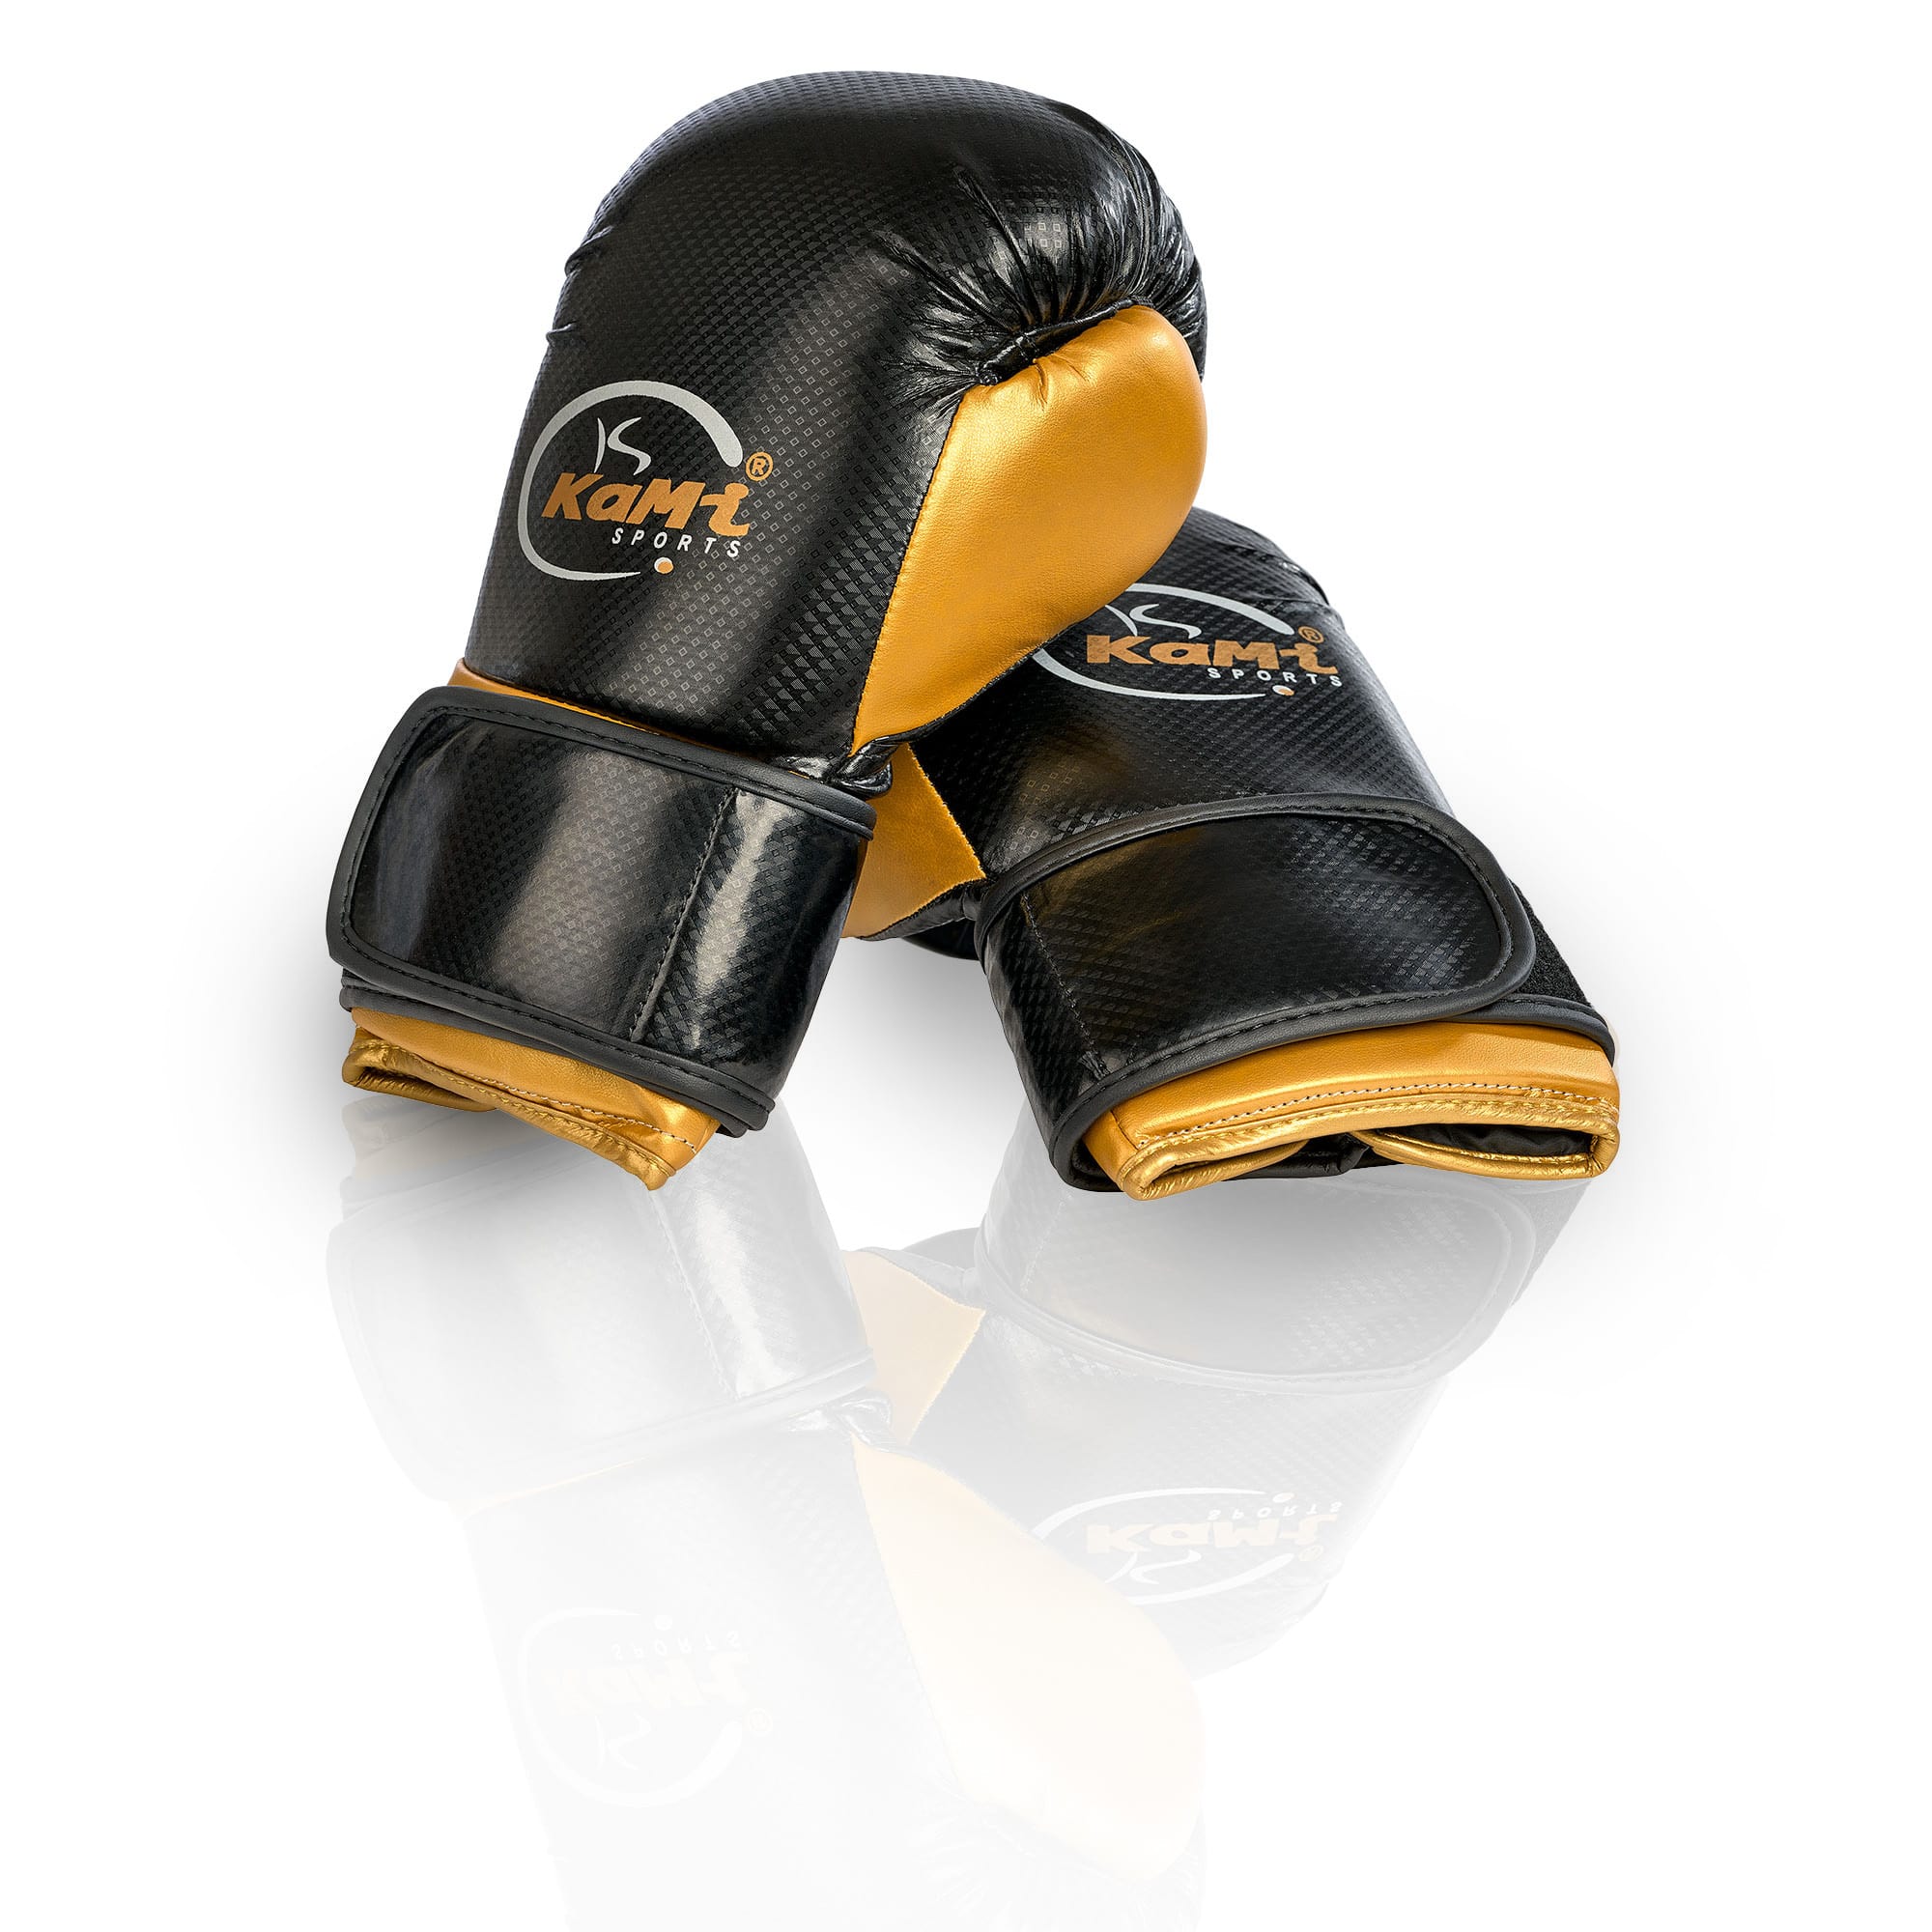 Hochwertige PU-Leder Boxhandschuhe in Karbon-Optik, optimal für Training und Sparring, komfortable Polsterung, geeignet für alle Kampfsportarten